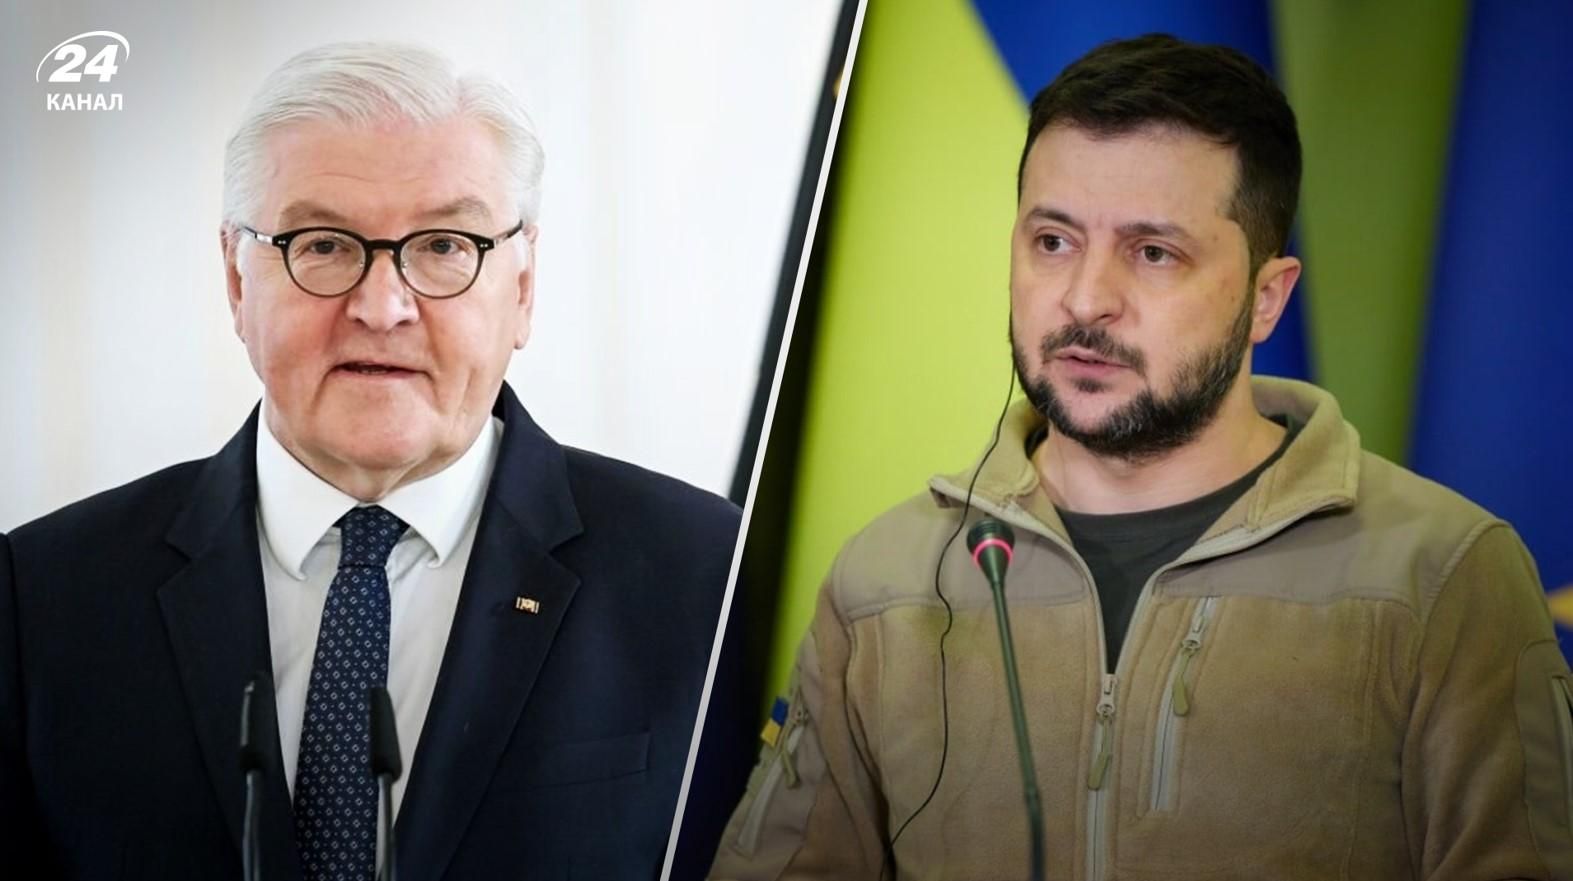 Германия остается мощным союзником Украины, – Зеленский поговорил со Штайнмайером